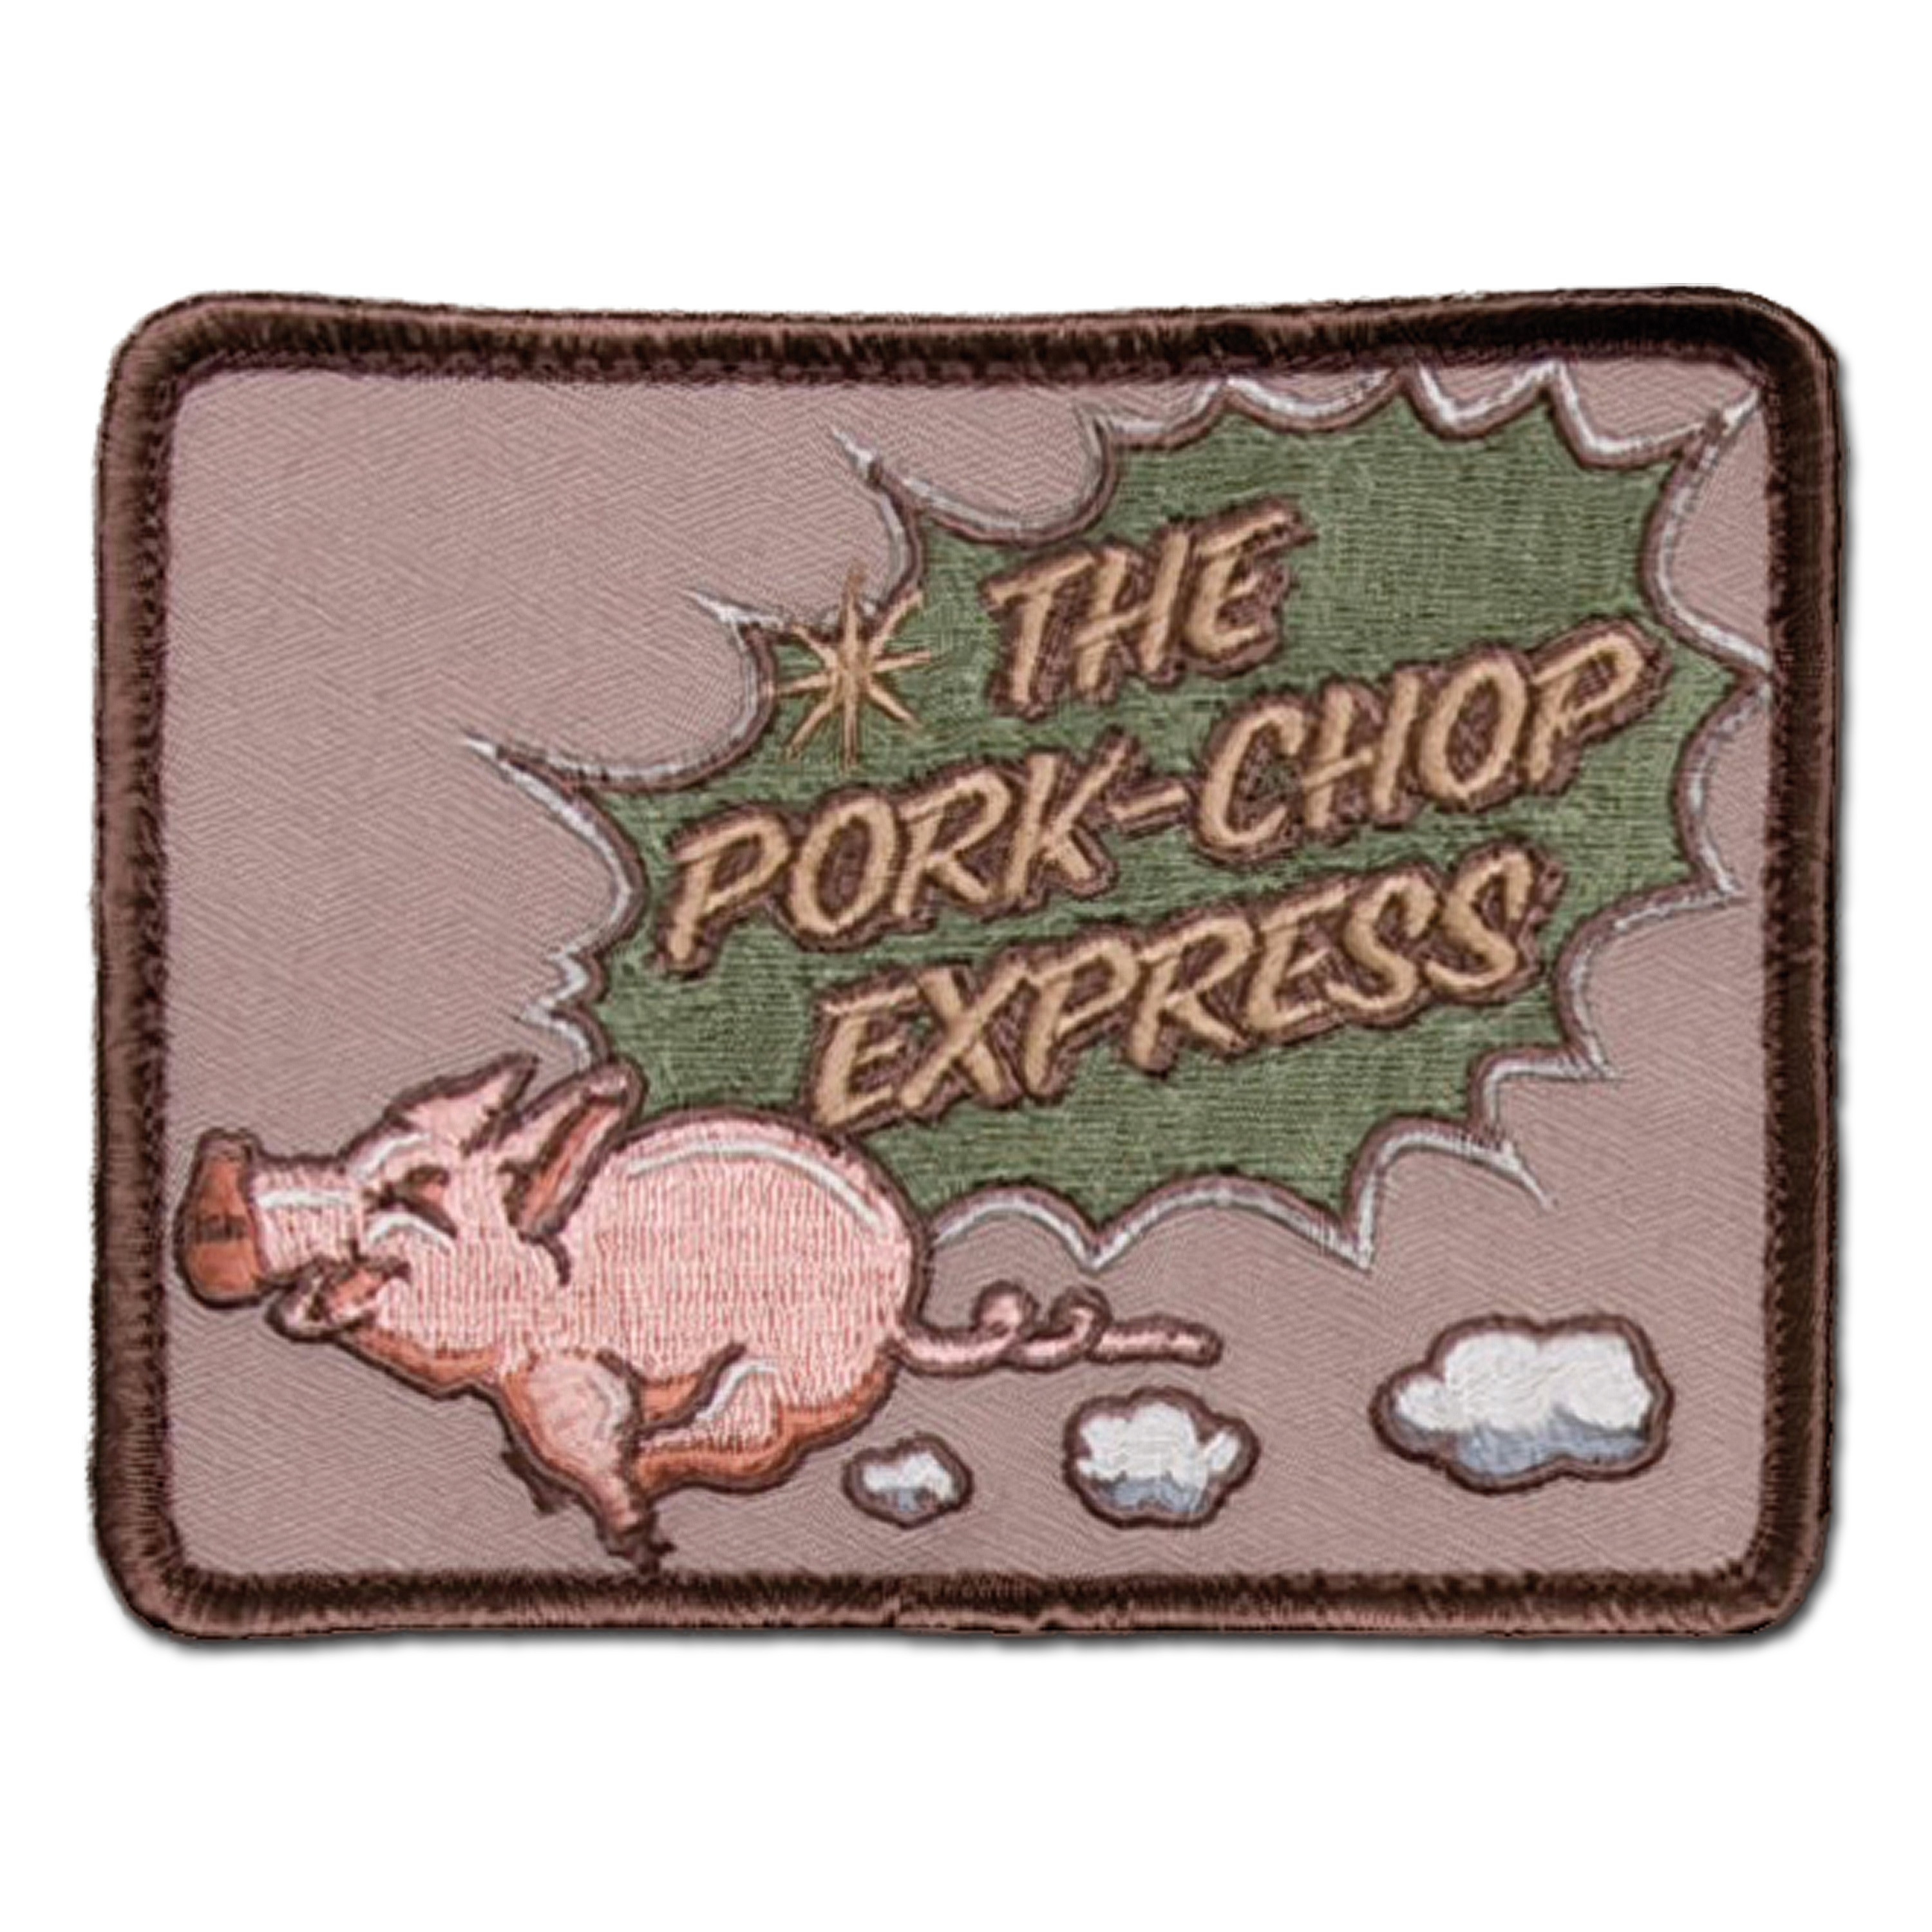 Mil Spec Monkey Patch Pork Chop Express